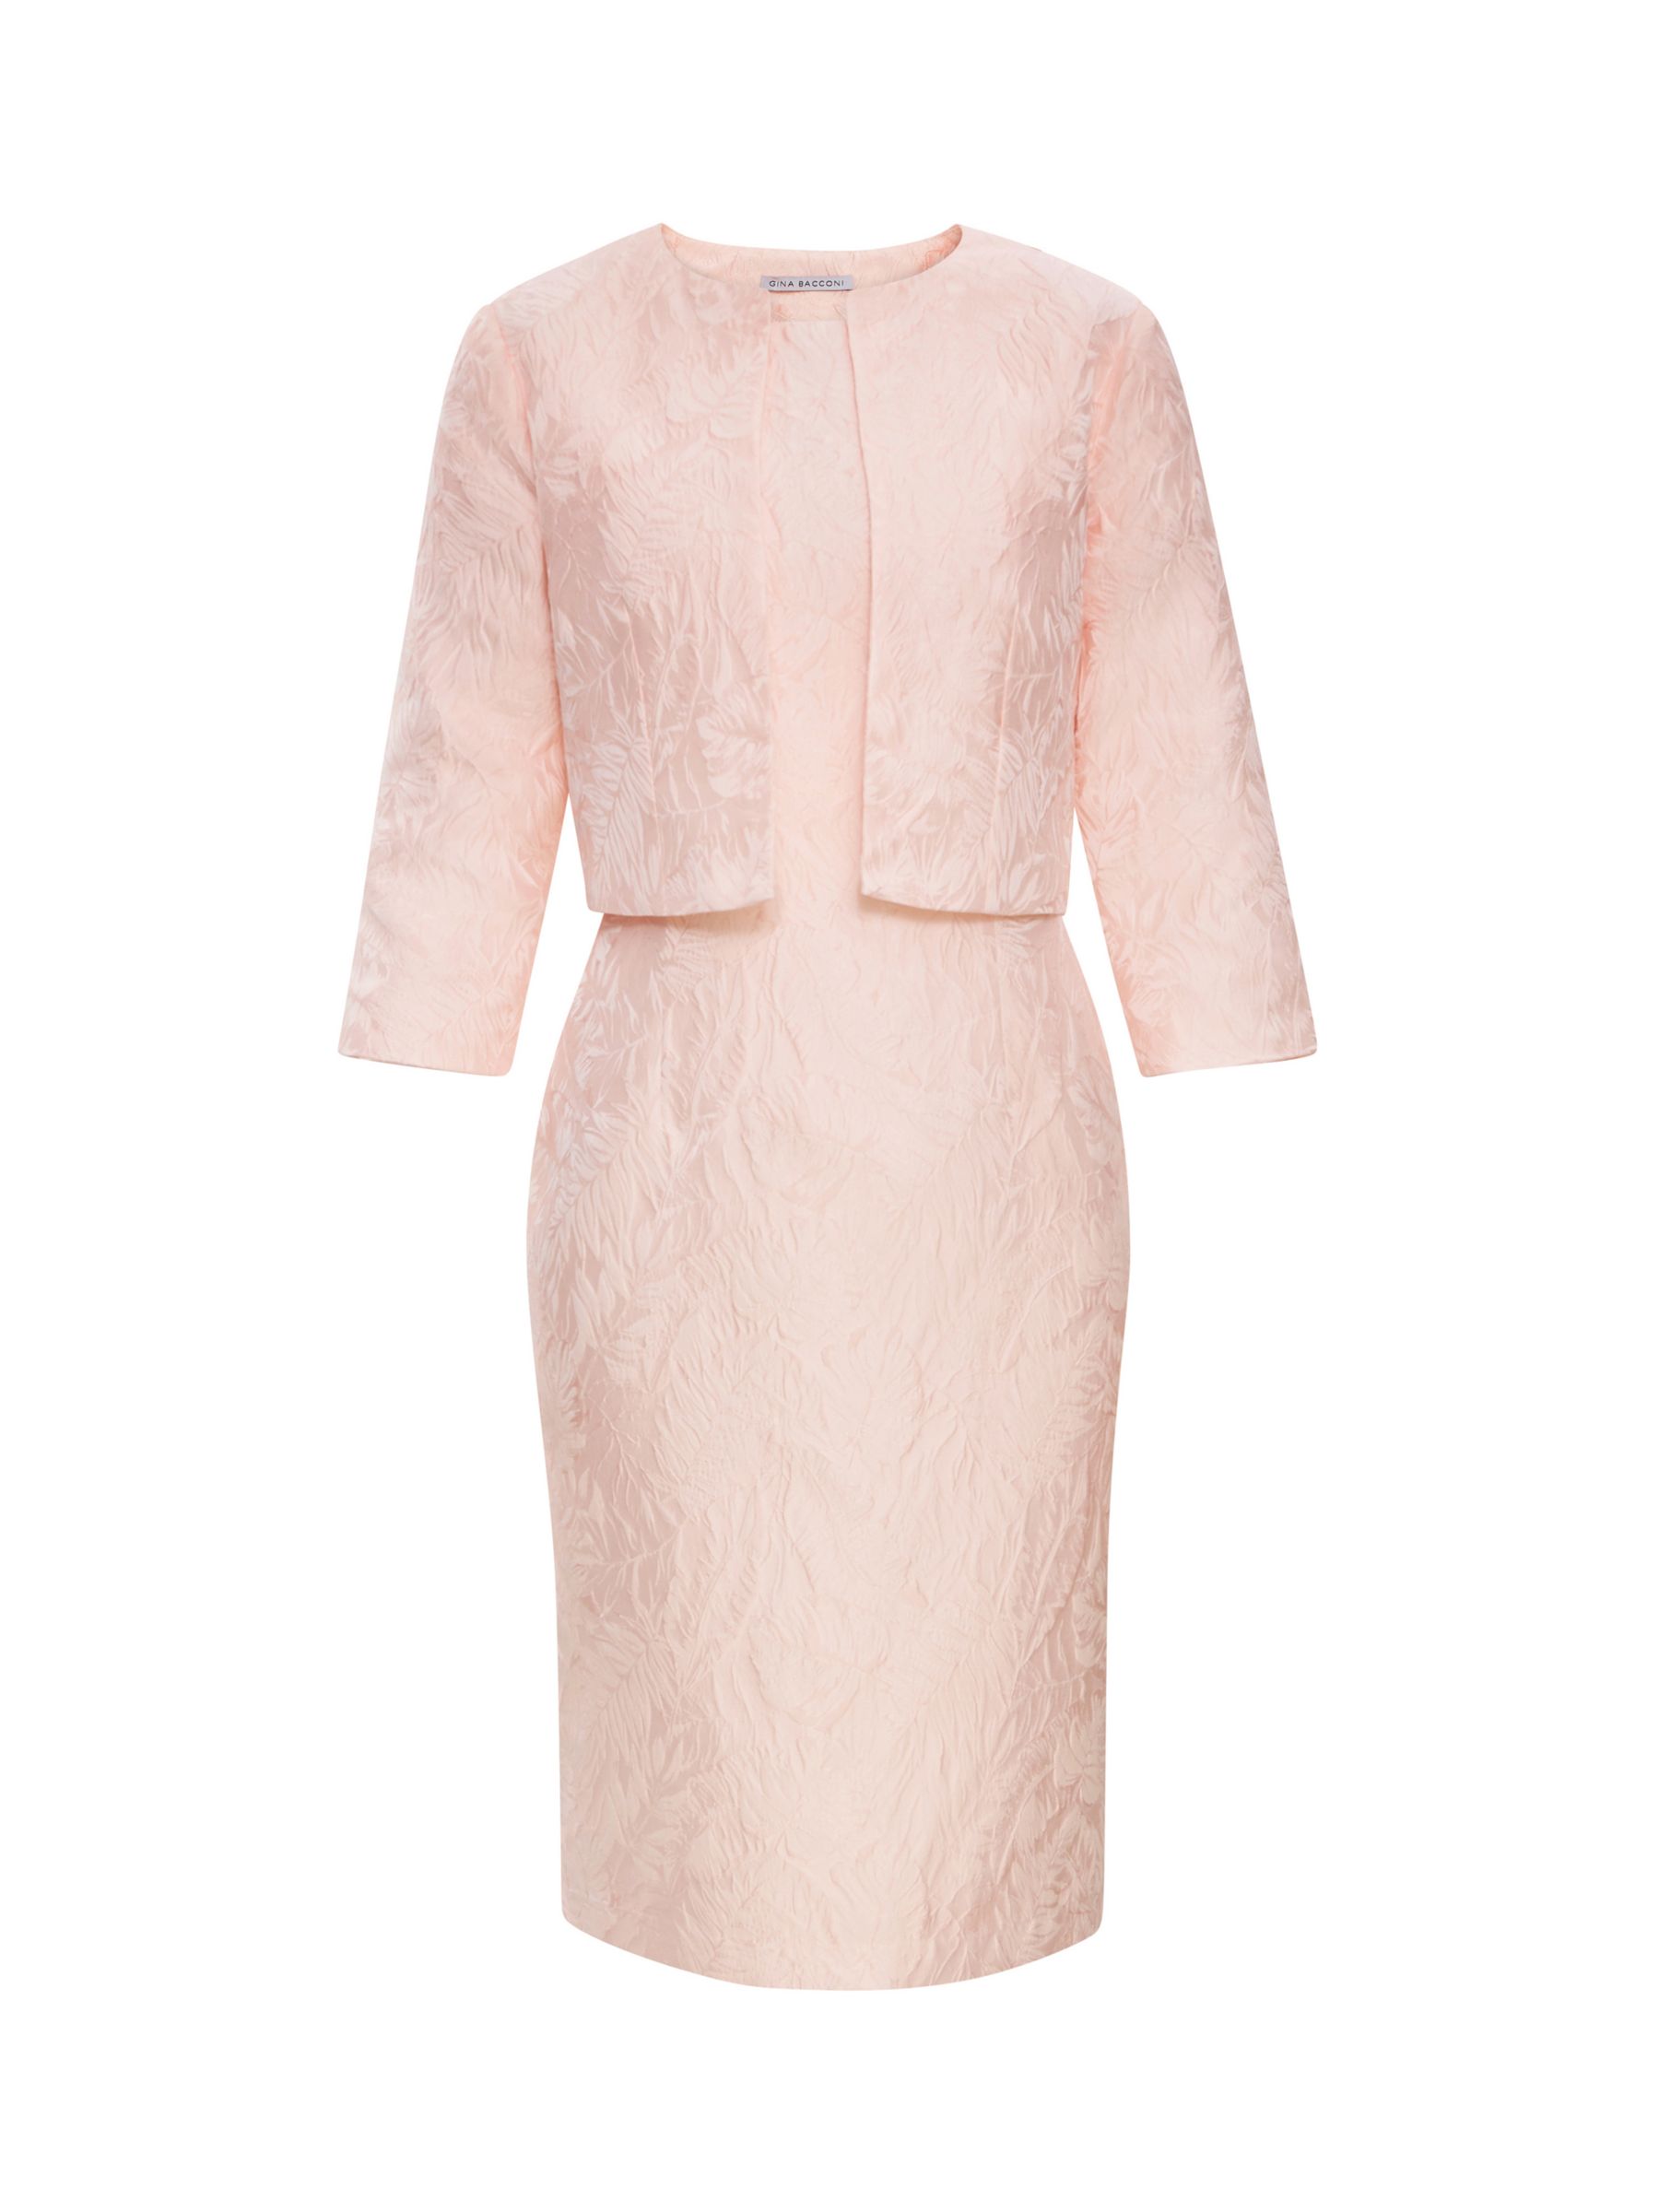 Buy Gina Bacconi Sofya Jacquard Sheath Dress and Bolero Jacket, Pink Online at johnlewis.com